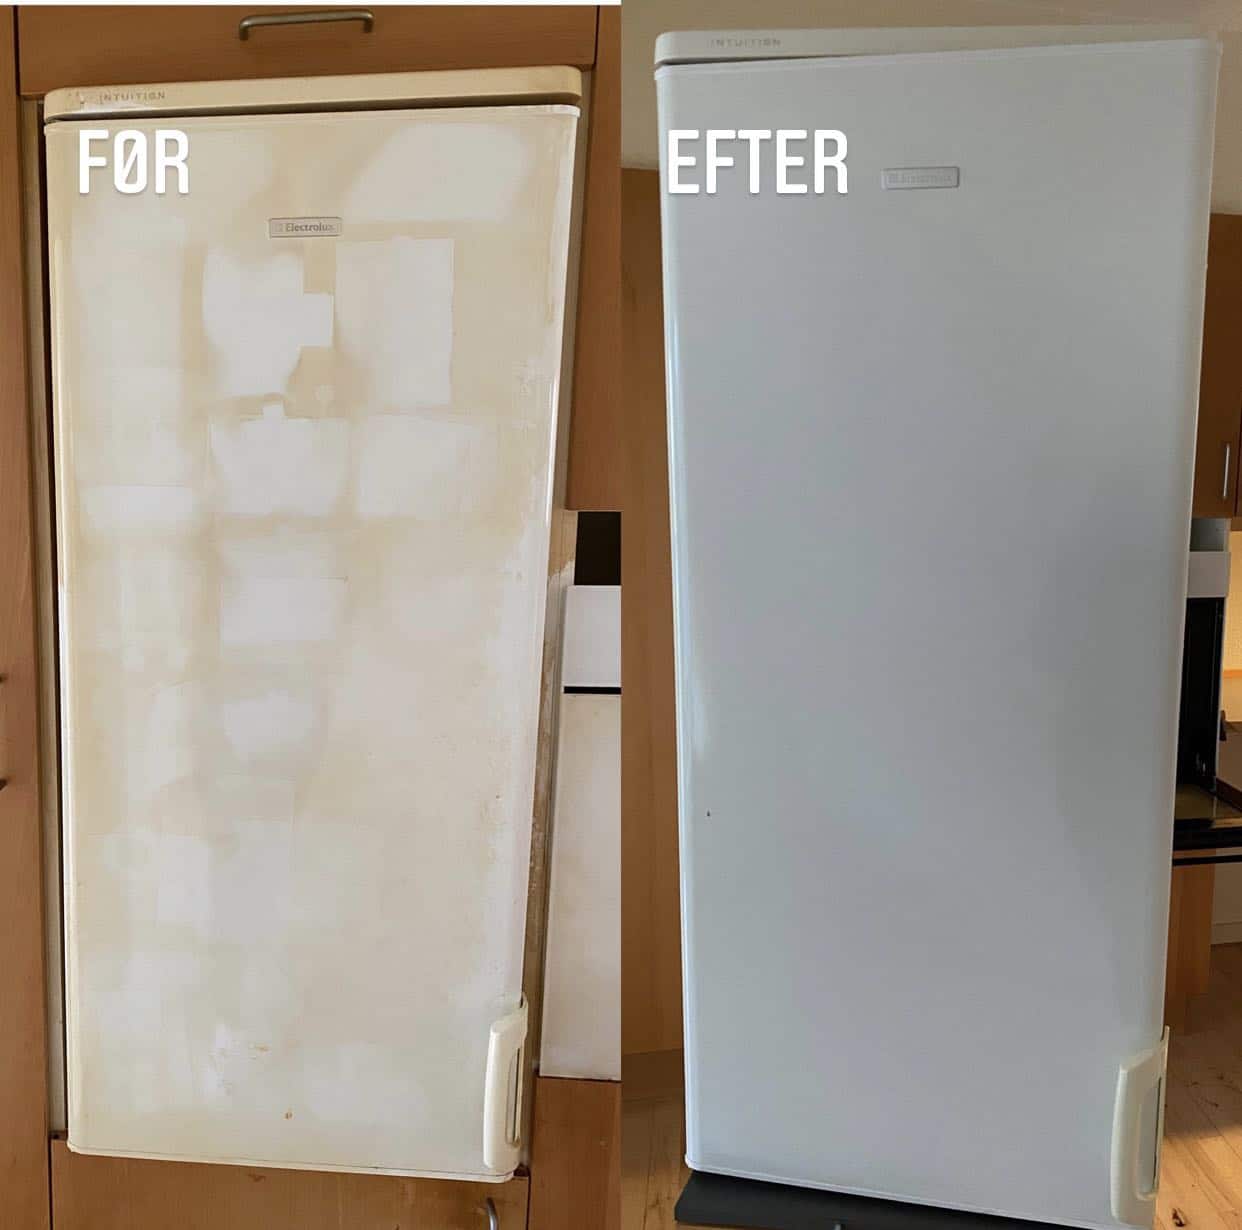 Køleskabet er rengjort fra top til bund, indvendig og udvendig.
Billedet er taget fra en rygerlejlighed, derfor er der også blevet brugt en ozon maskine i lejligheden for at fjerne lugten.